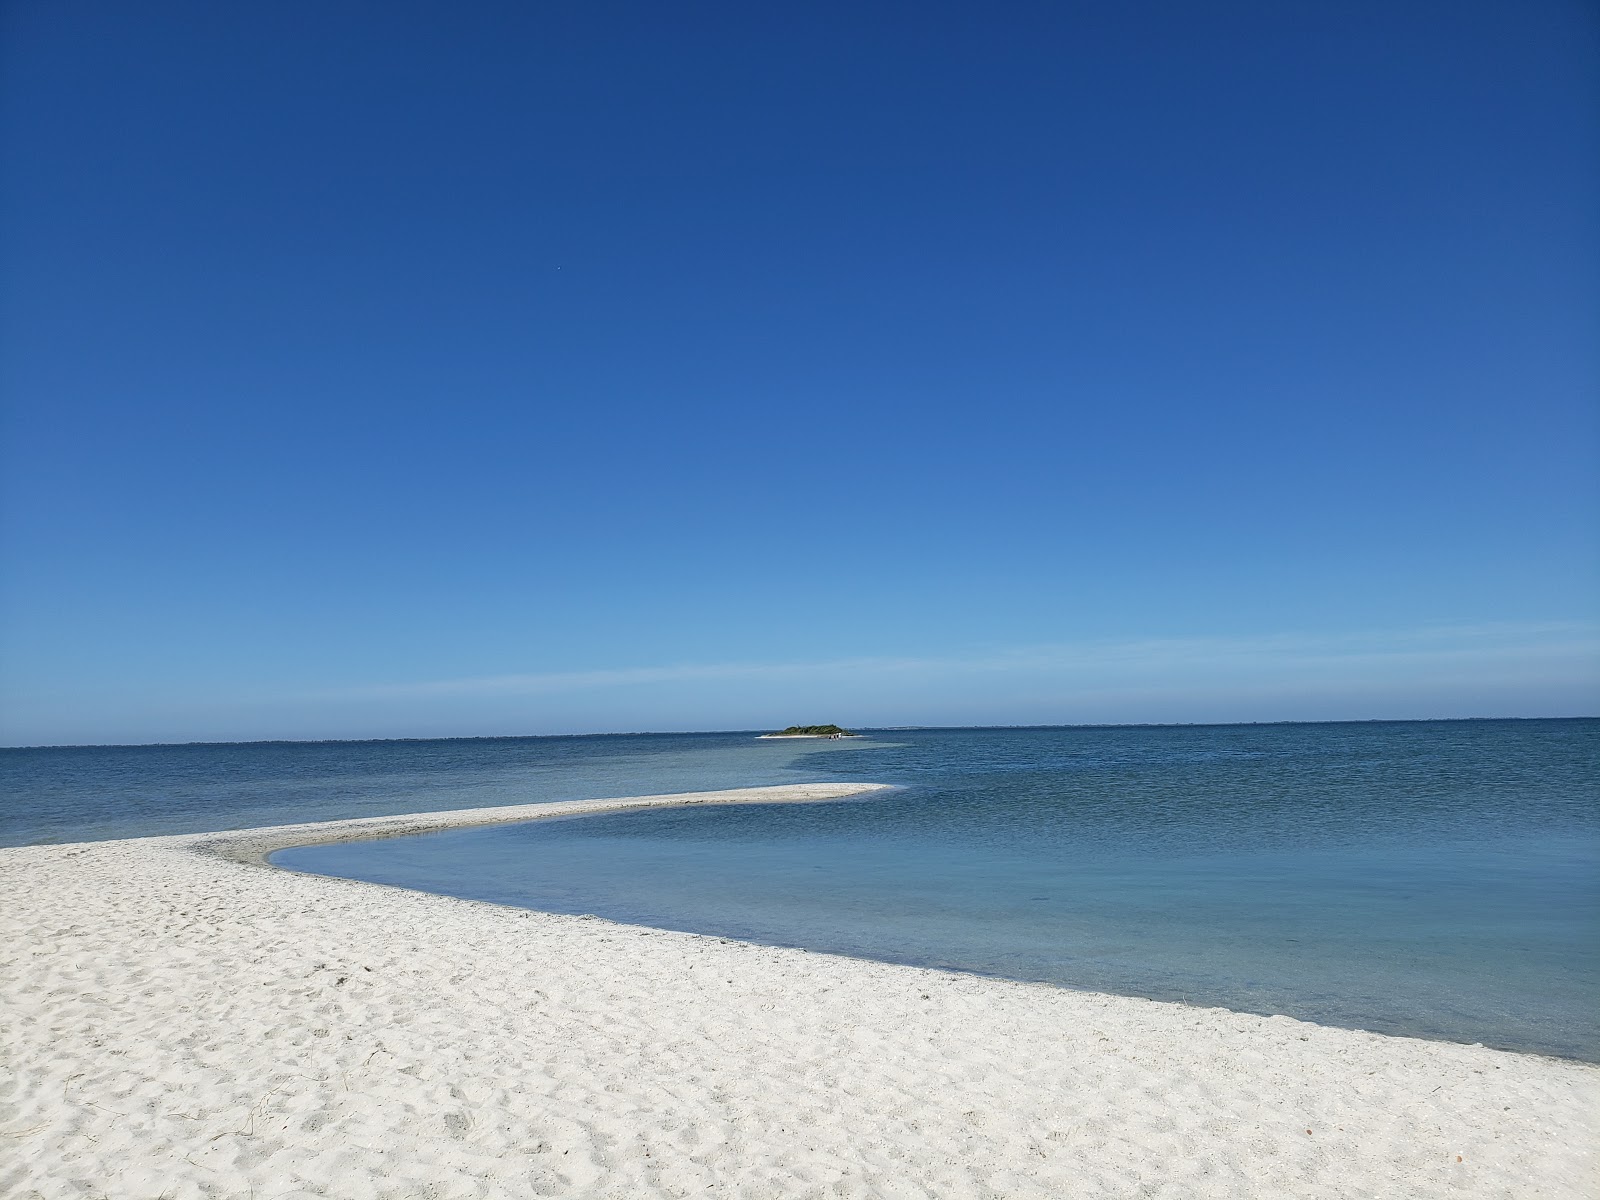 Praia da Salina'in fotoğrafı geniş plaj ile birlikte